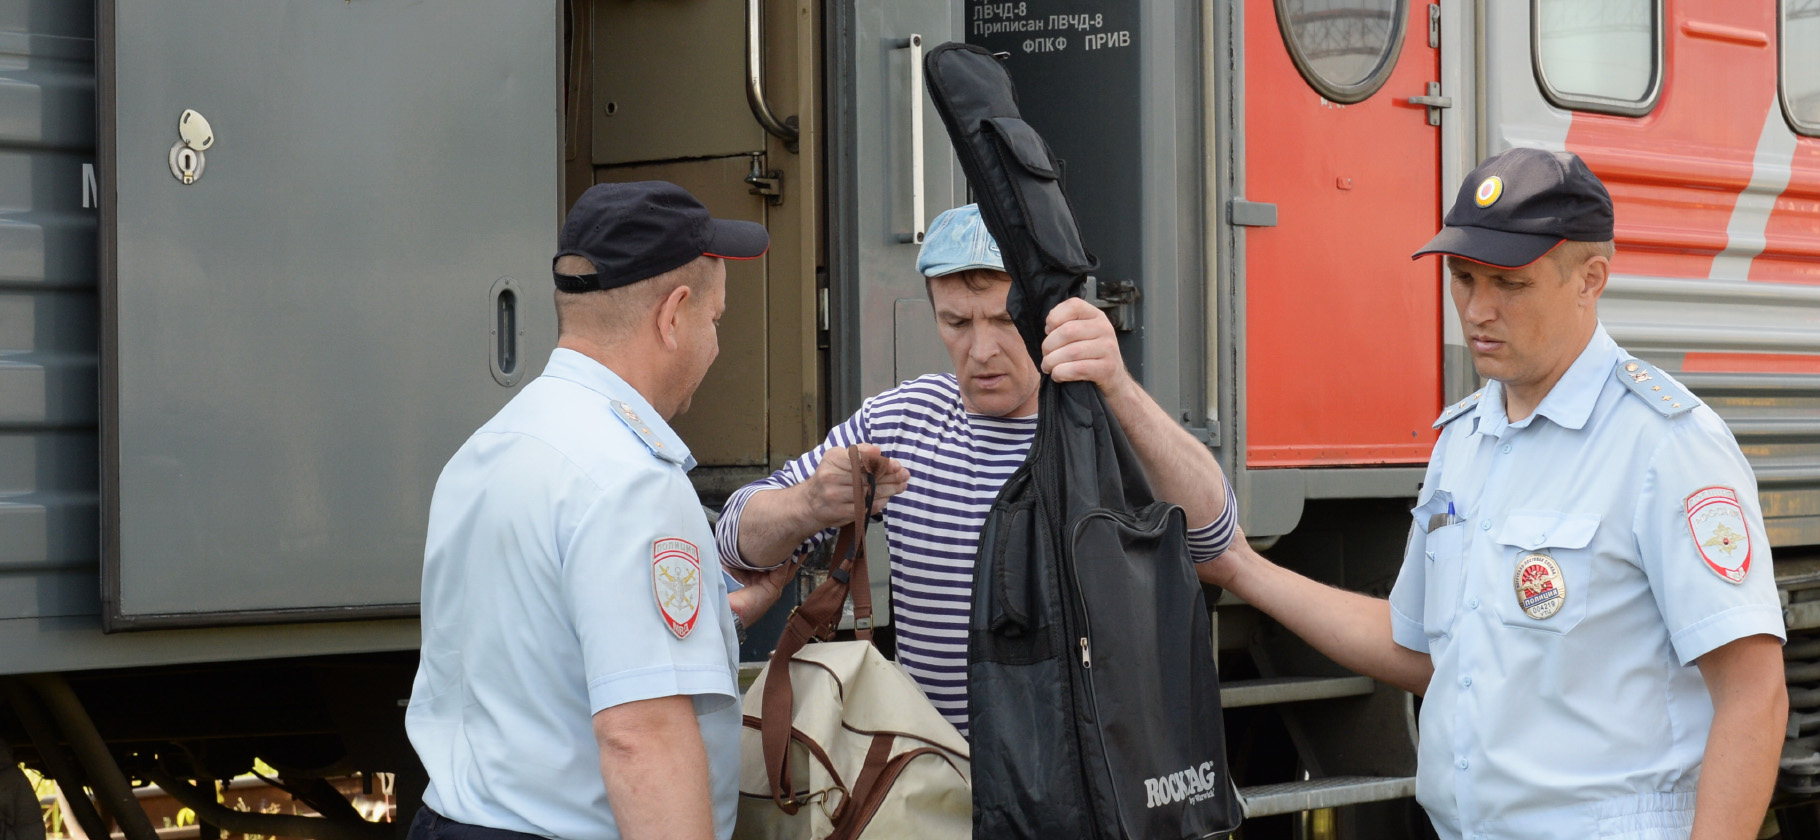 Разбитая голова, грязный вагон и буйный дембель: 7 судебных историй о поездах